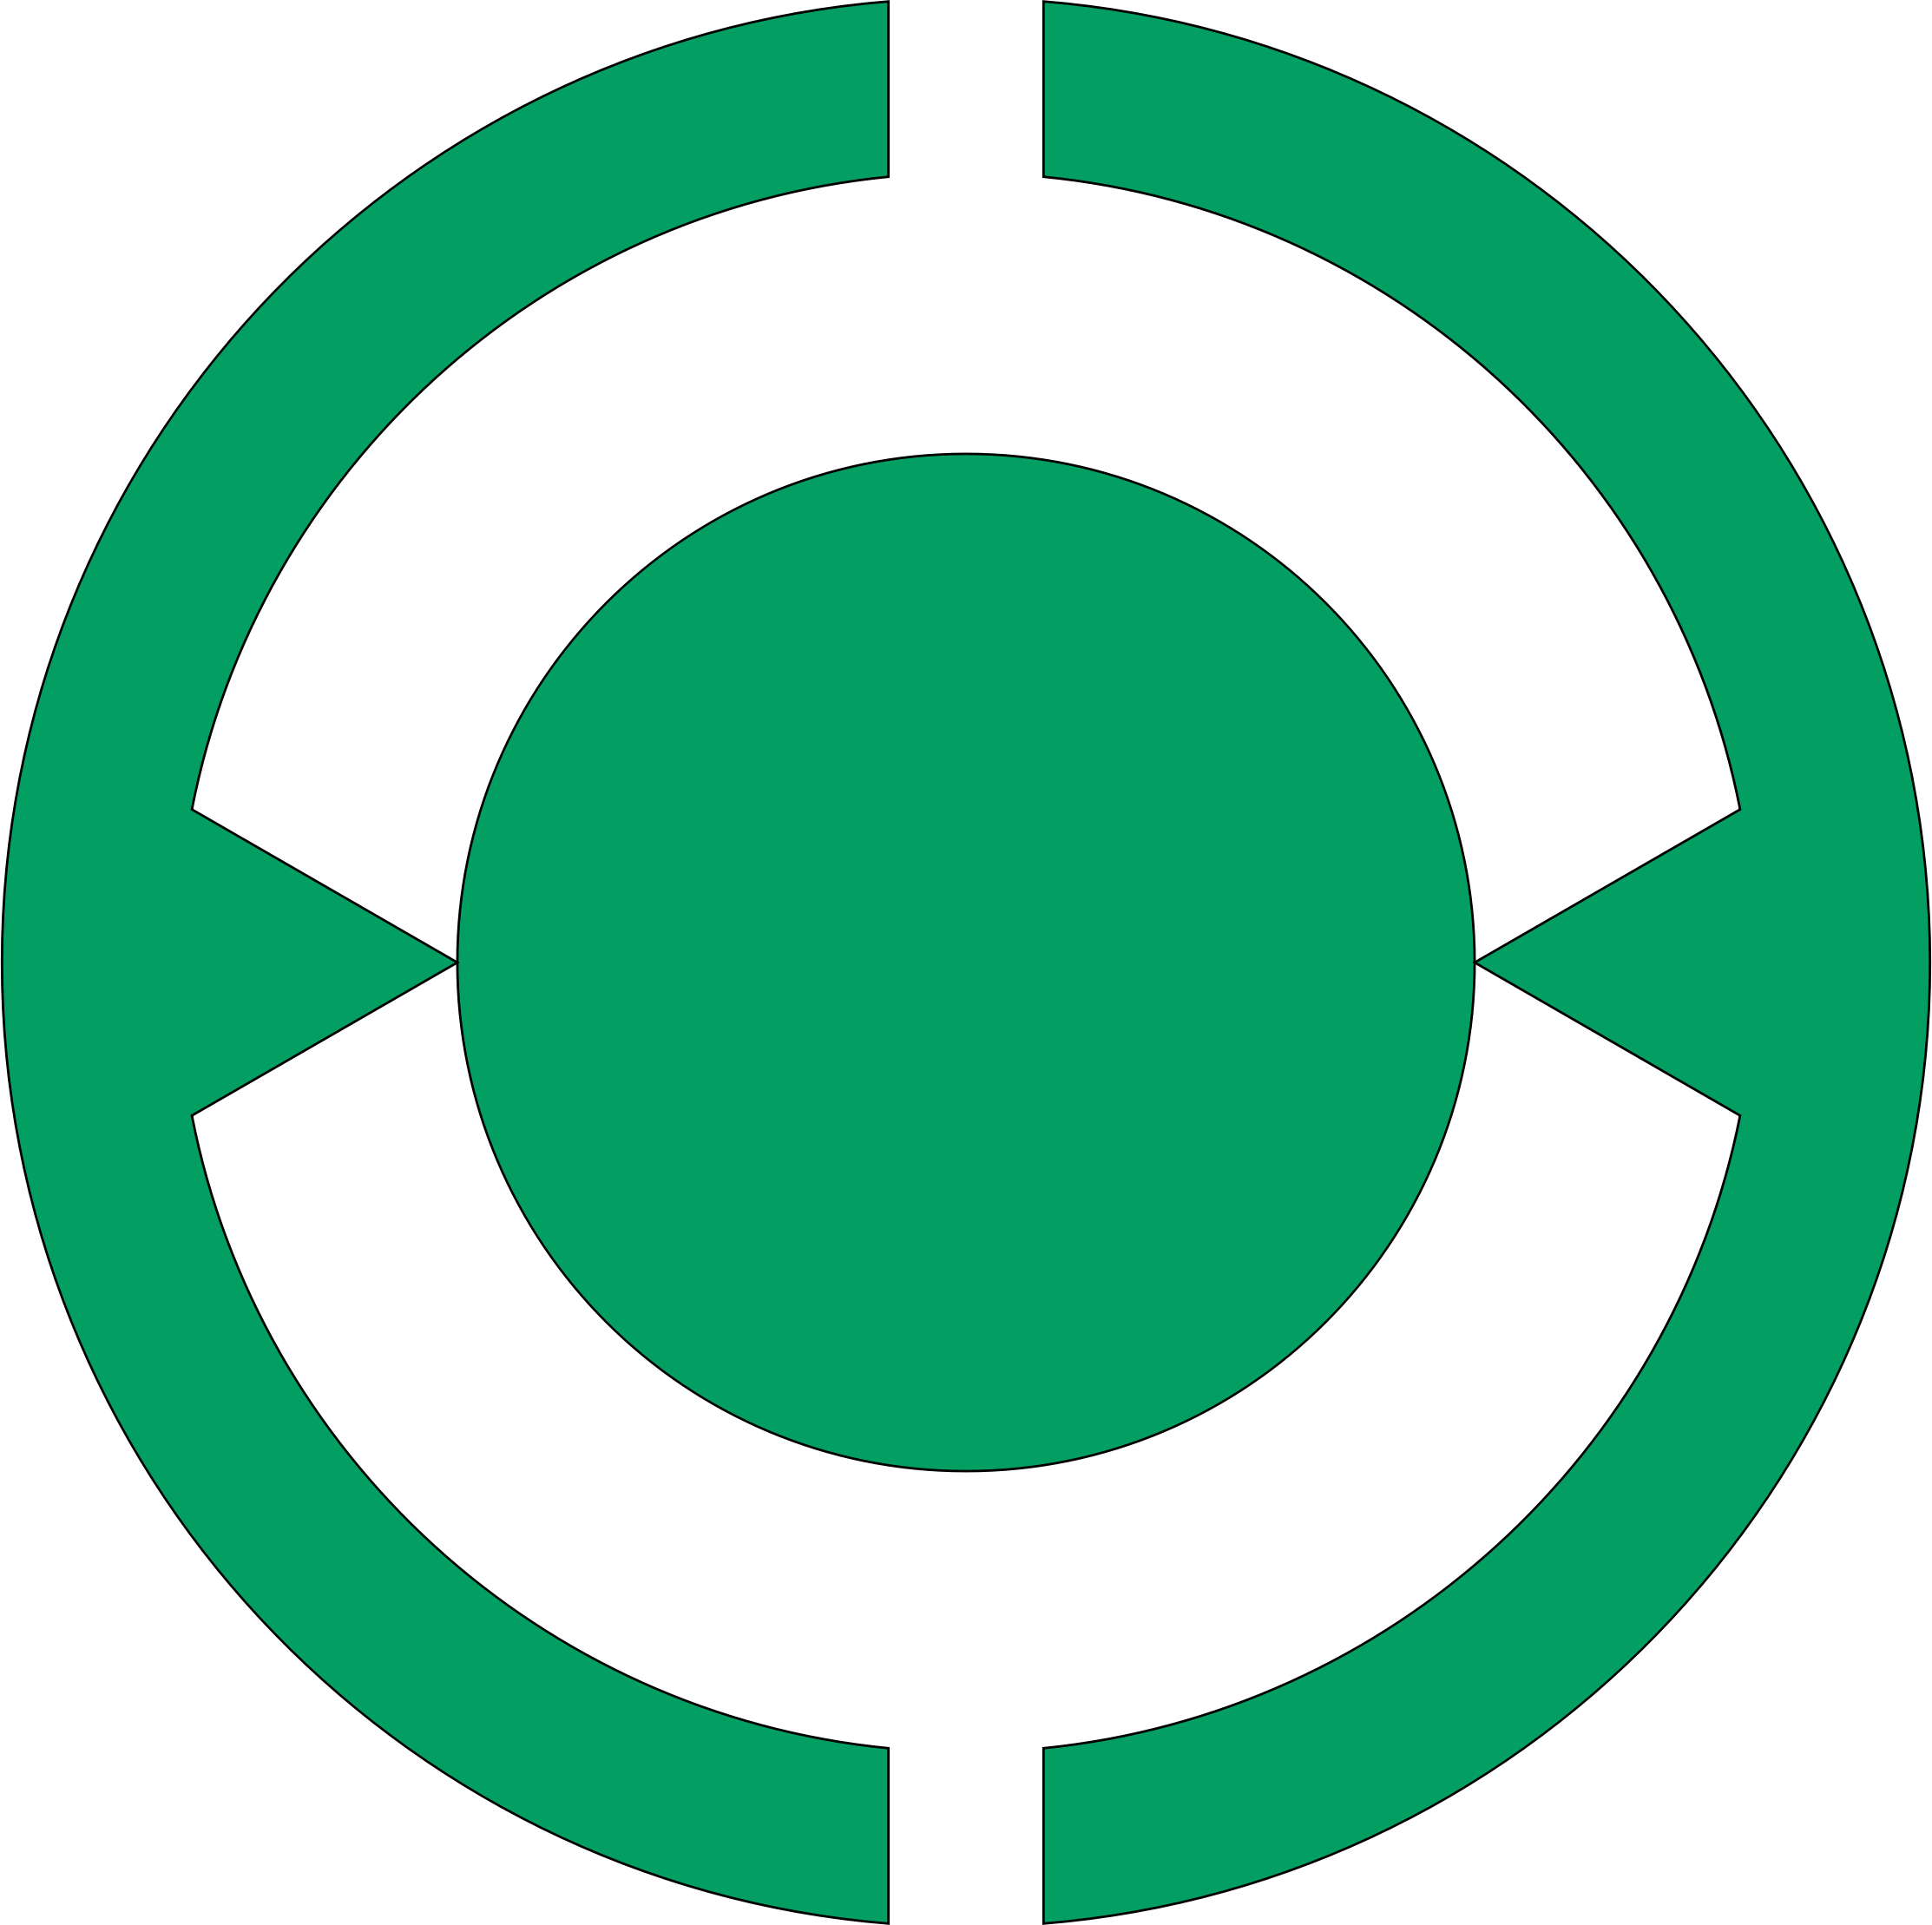 Circle points. Зеленый круг. Кружочек зеленый символ. Зеленая точка. Знаки глаз в зеленом круге.